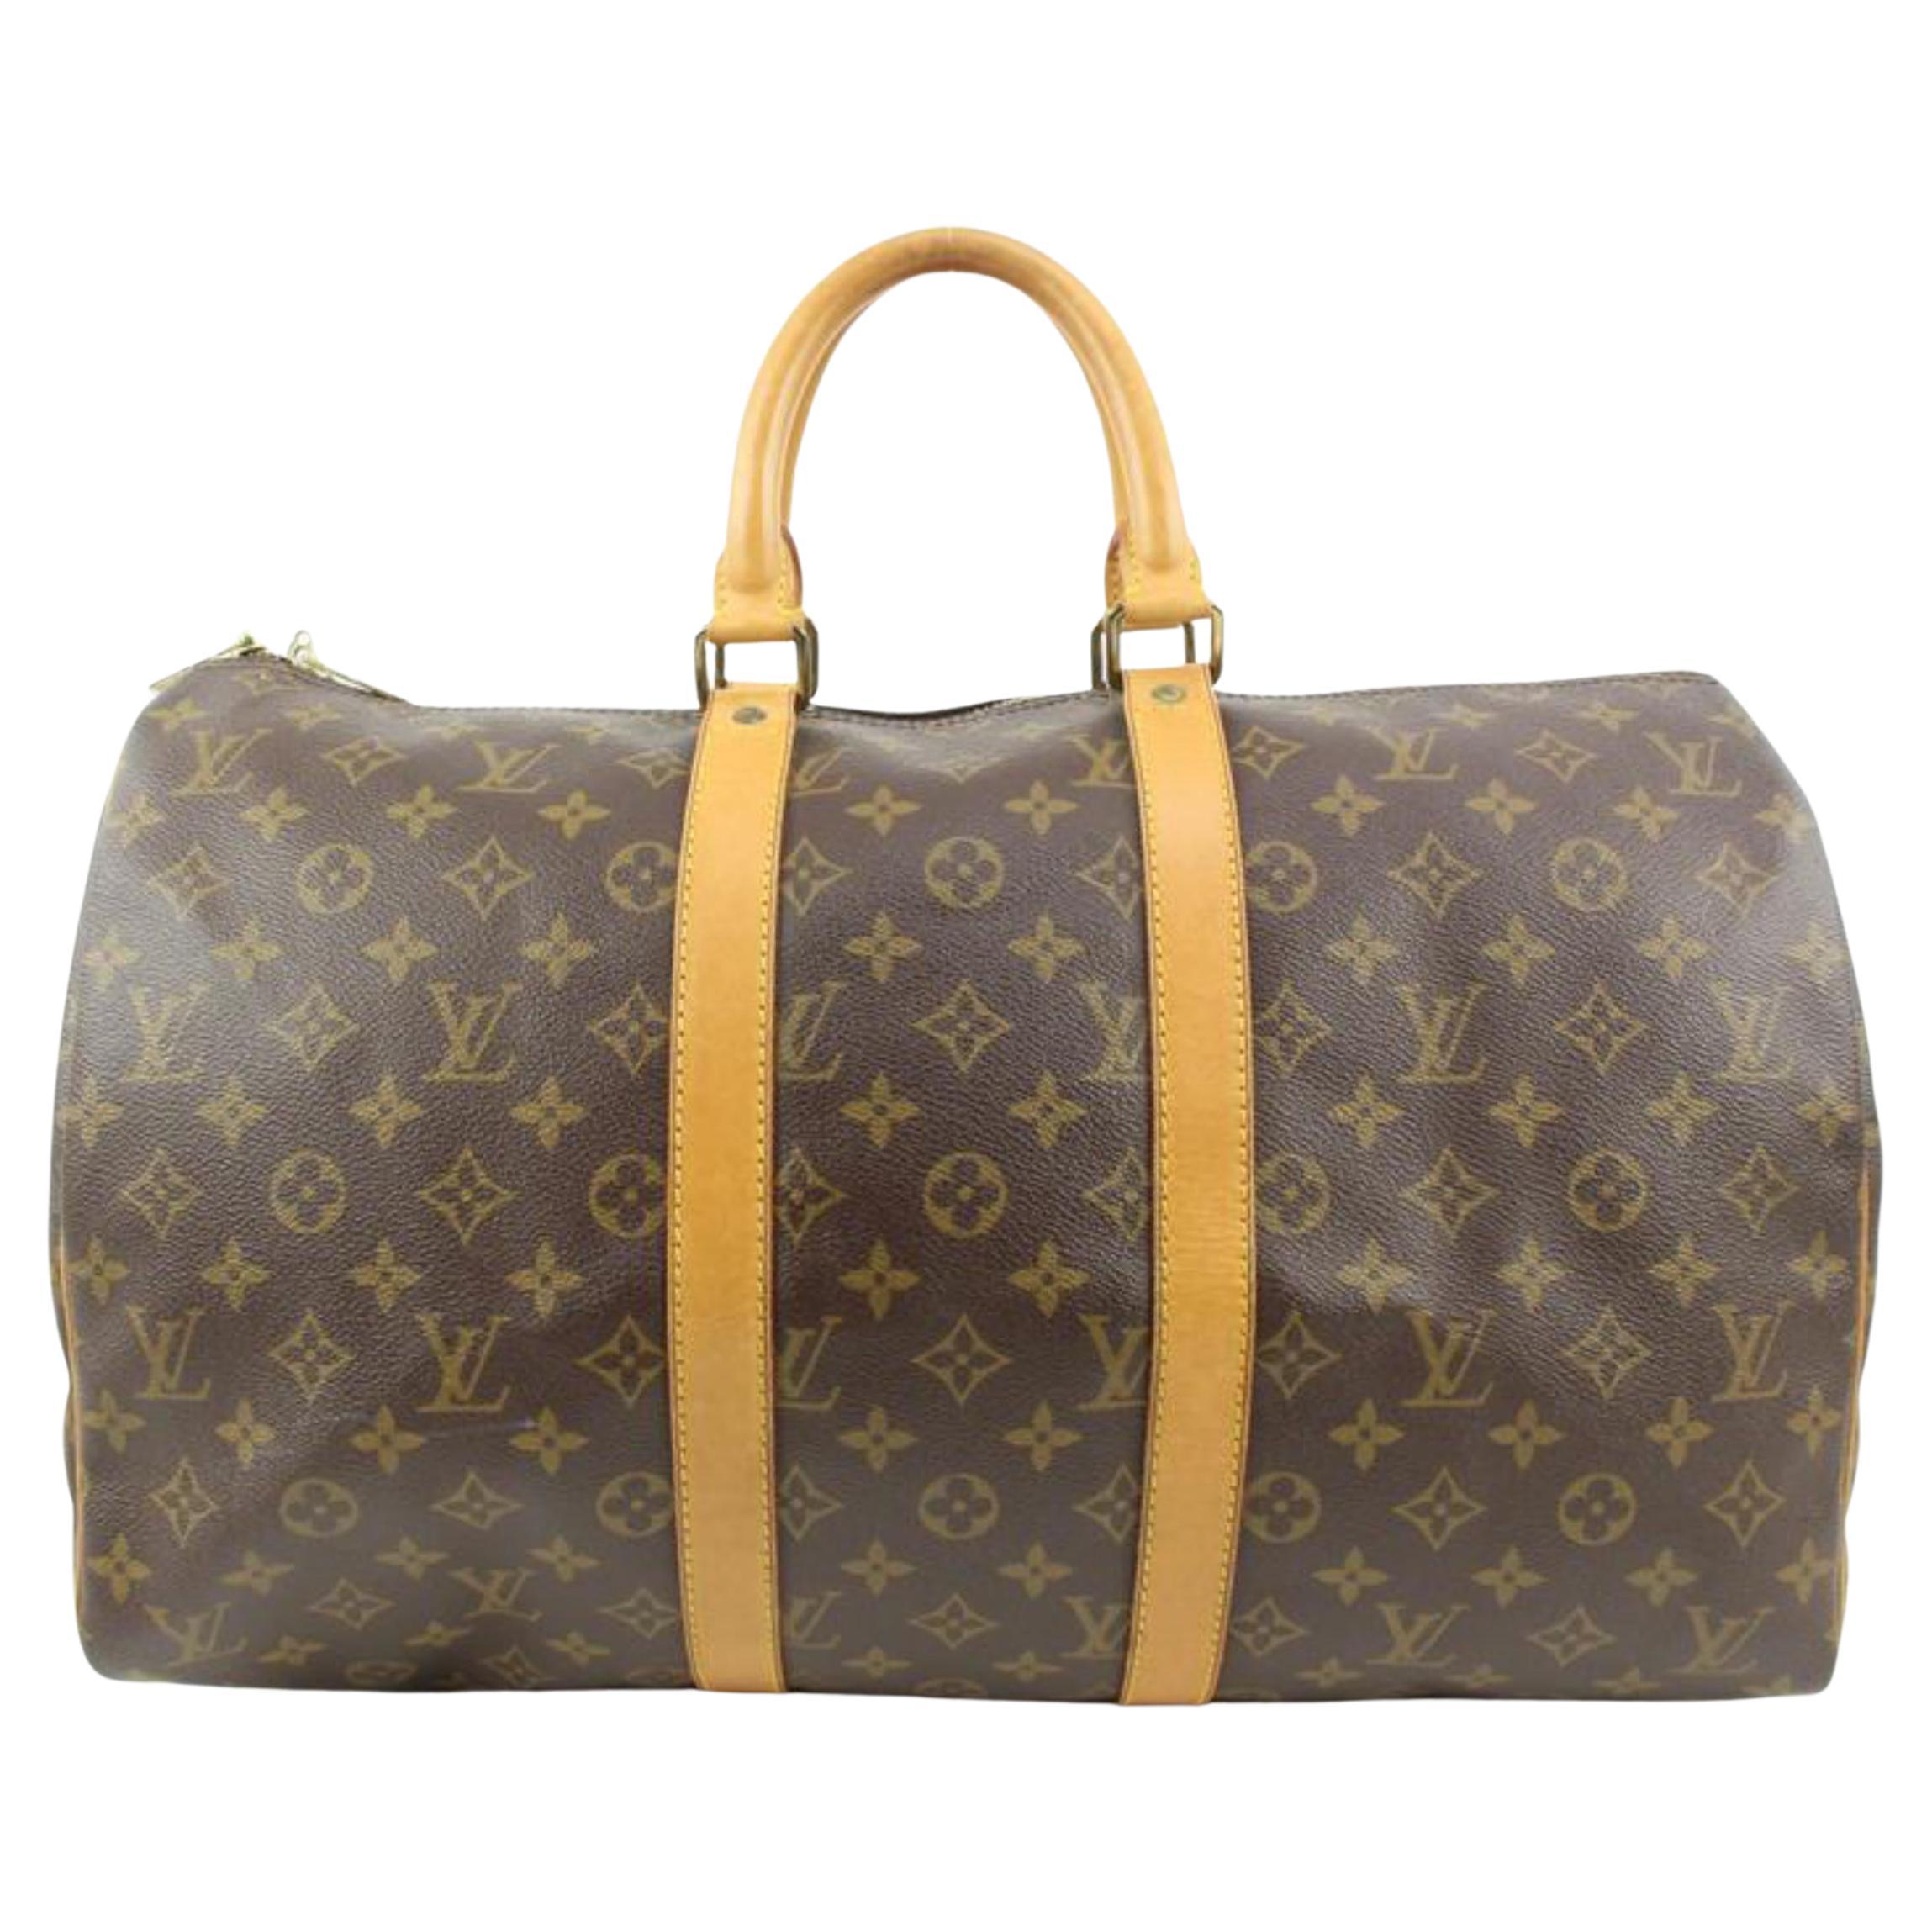 Louis Vuitton Monogram Keepall 45 Duffle Bag 7LV415a